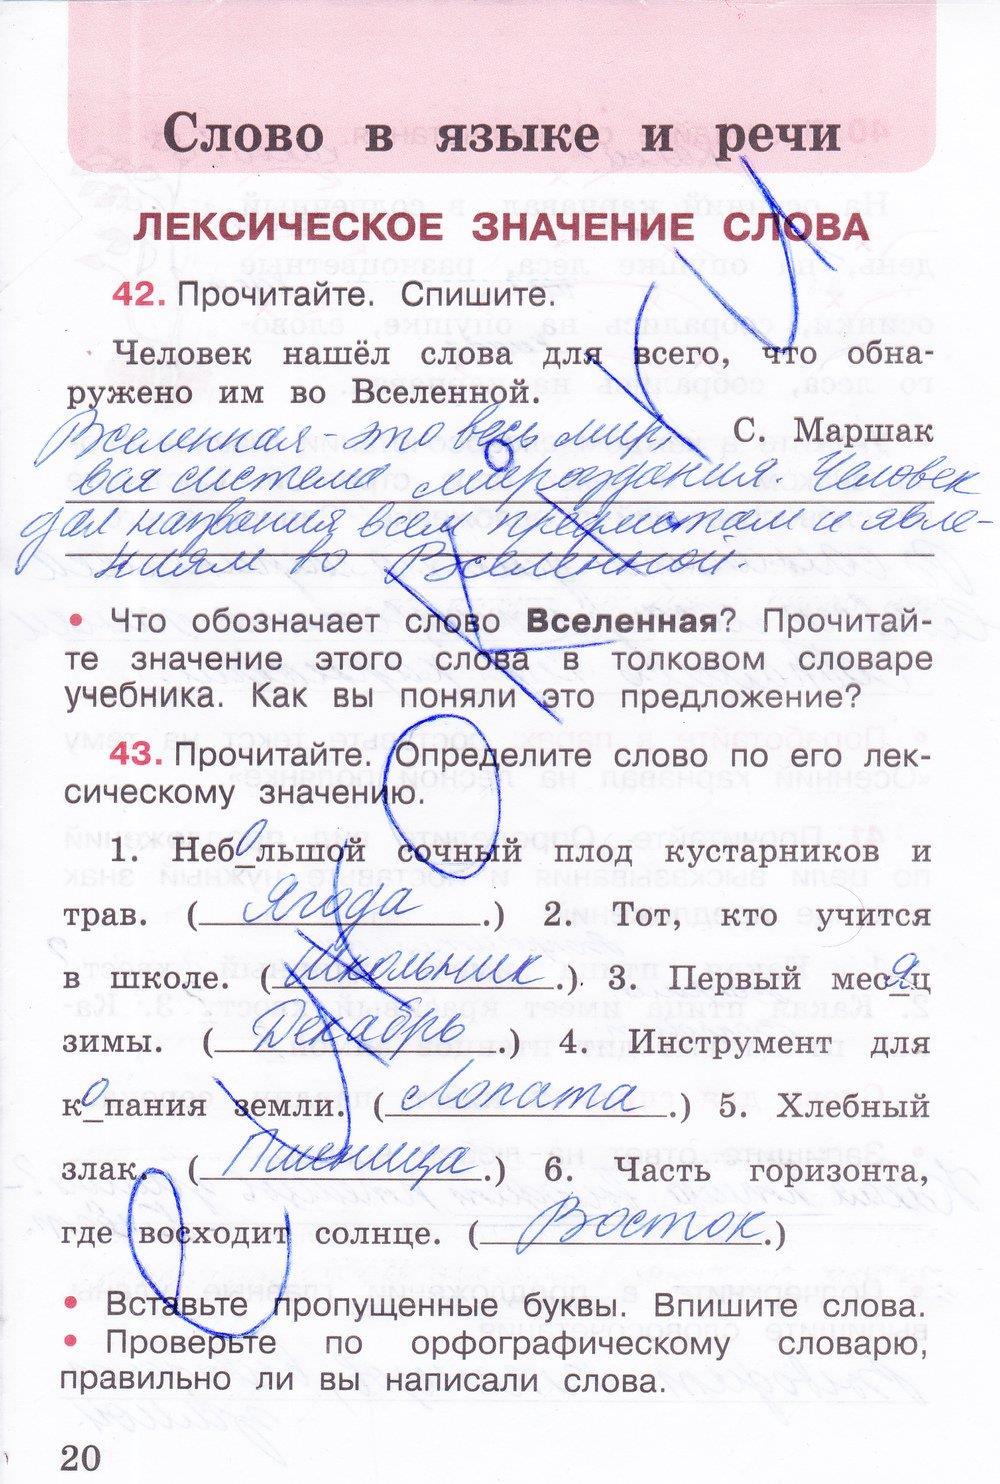 Что означает читать человека. Русский язык рабочая тетрадь 3 класс 1 часть страница 20.